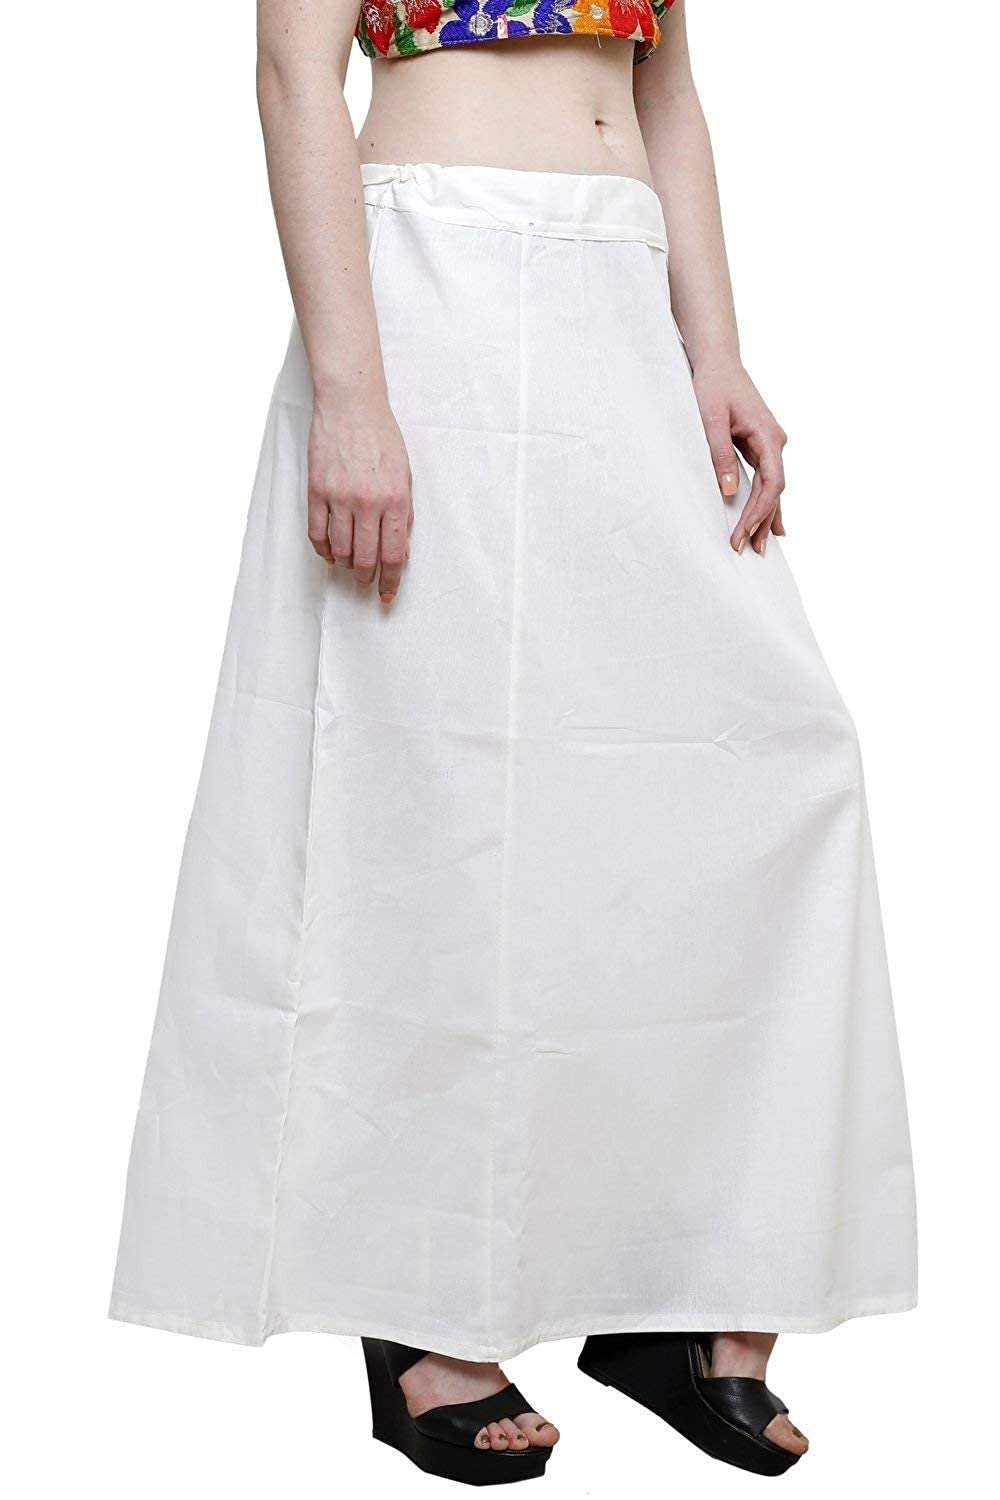 Sexy White Petticoat Saree Shapewear - lacysouls